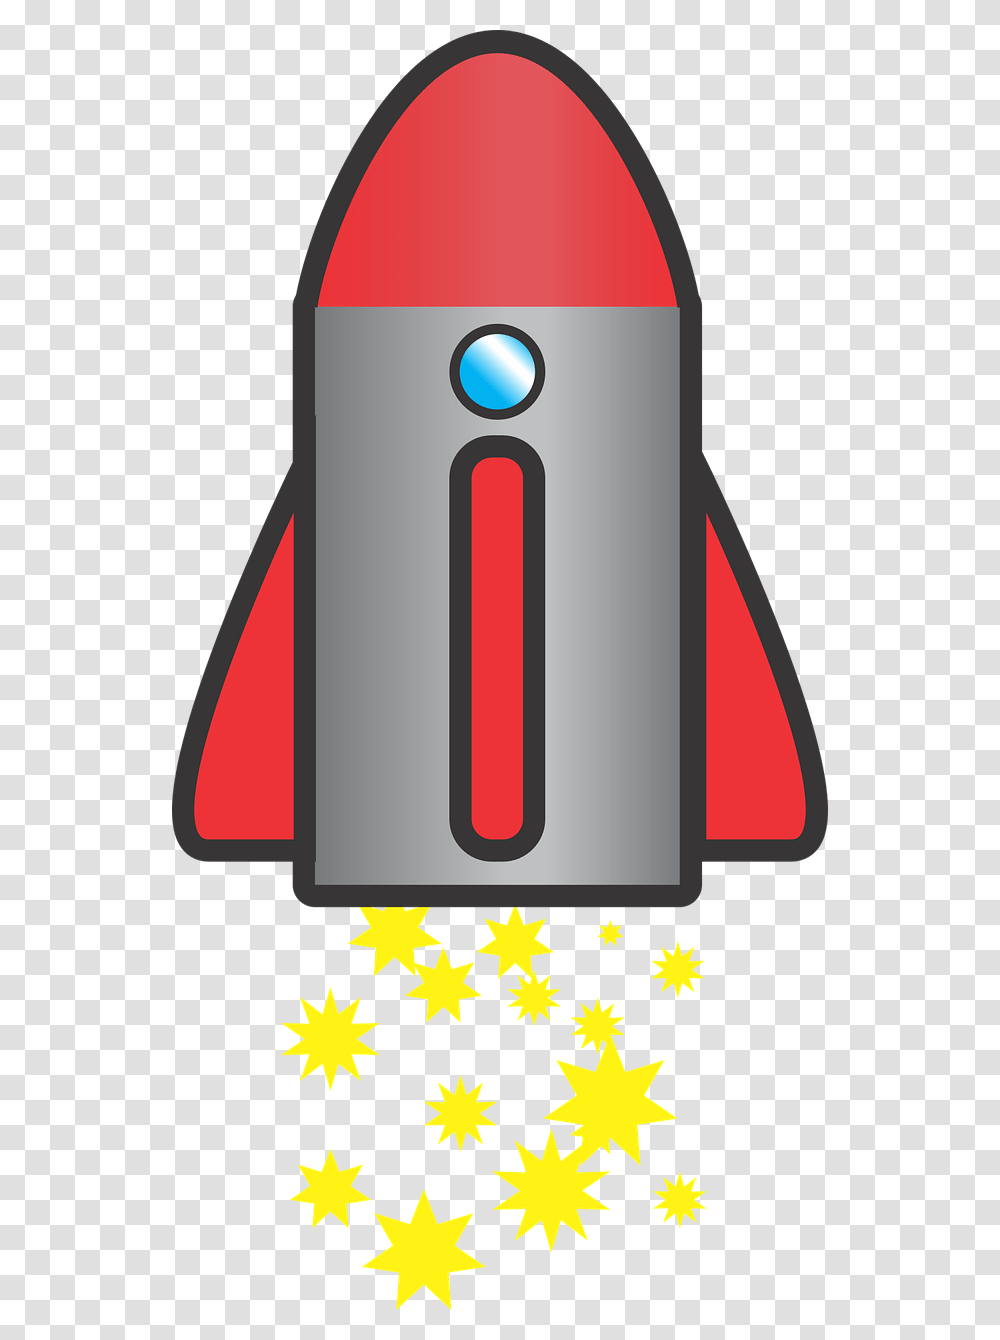 Rocket Blast Off Space Free Photo Rocket Blast Off, Number Transparent Png